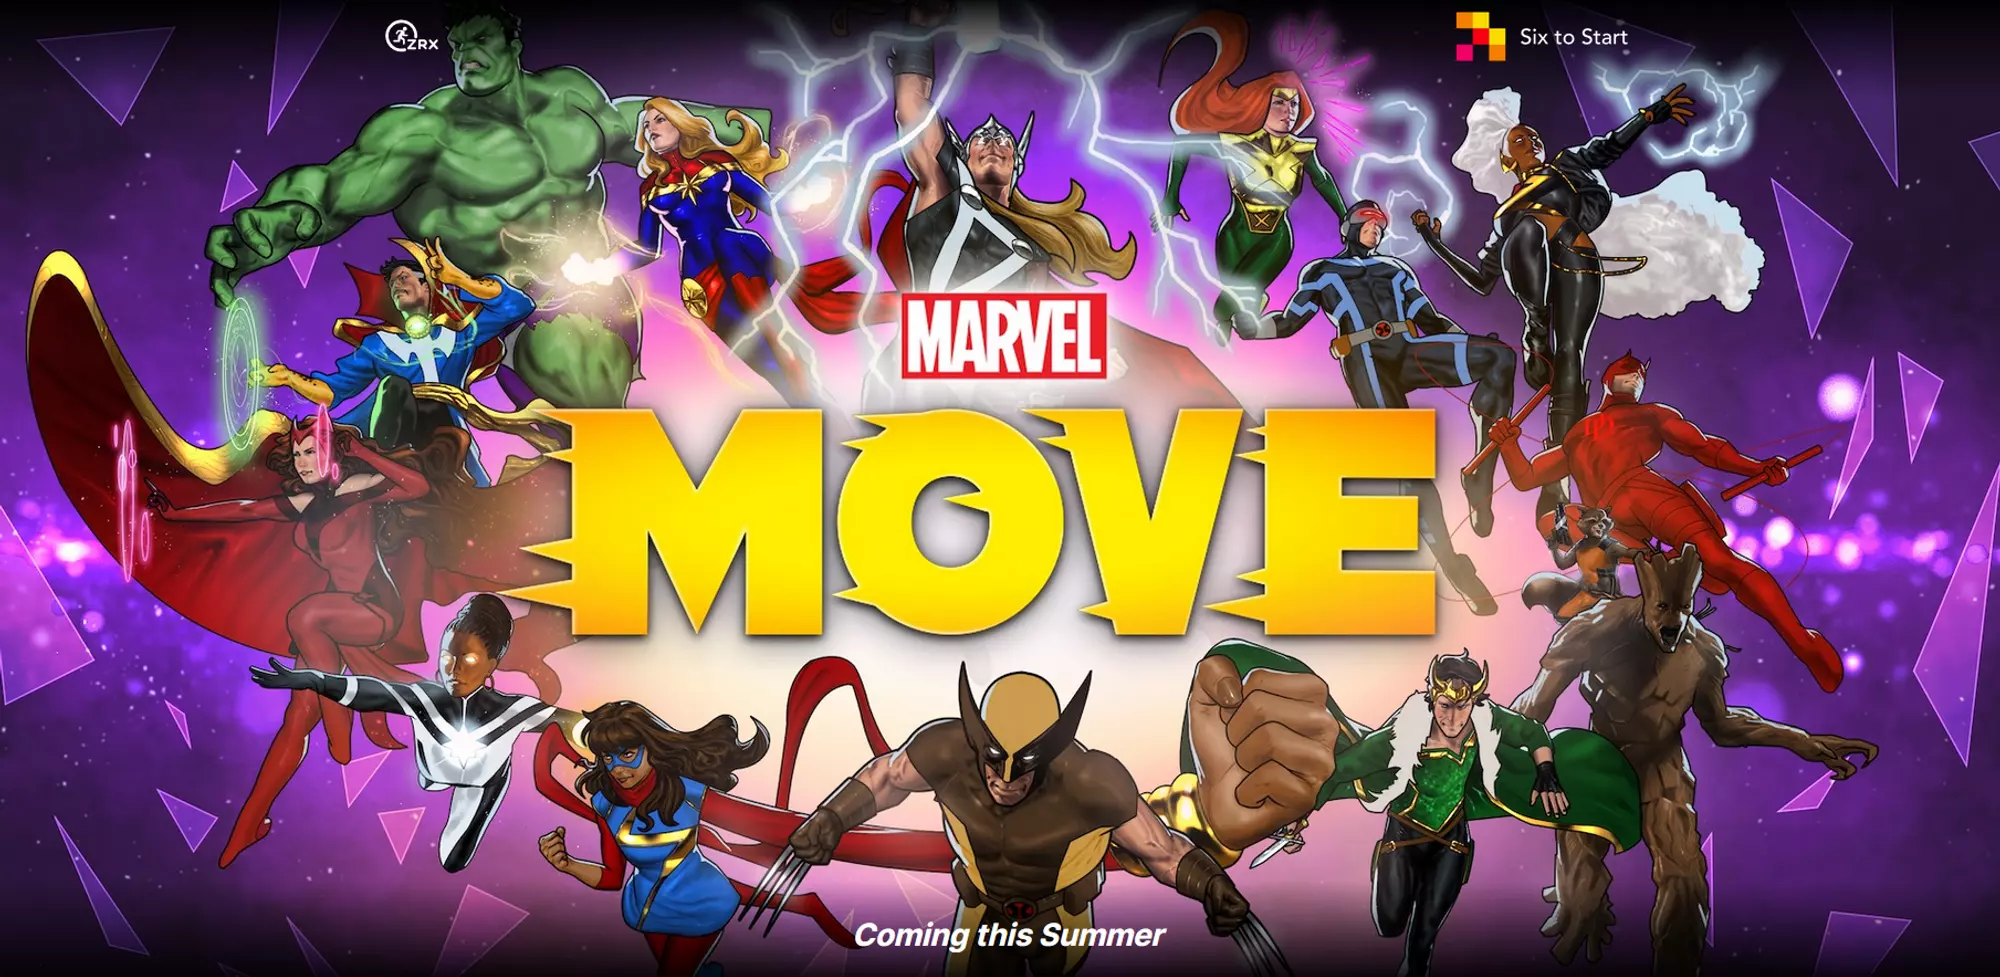 Marvel Move - Chạy bộ cùng với các huấn luyện viên Thor, Loki